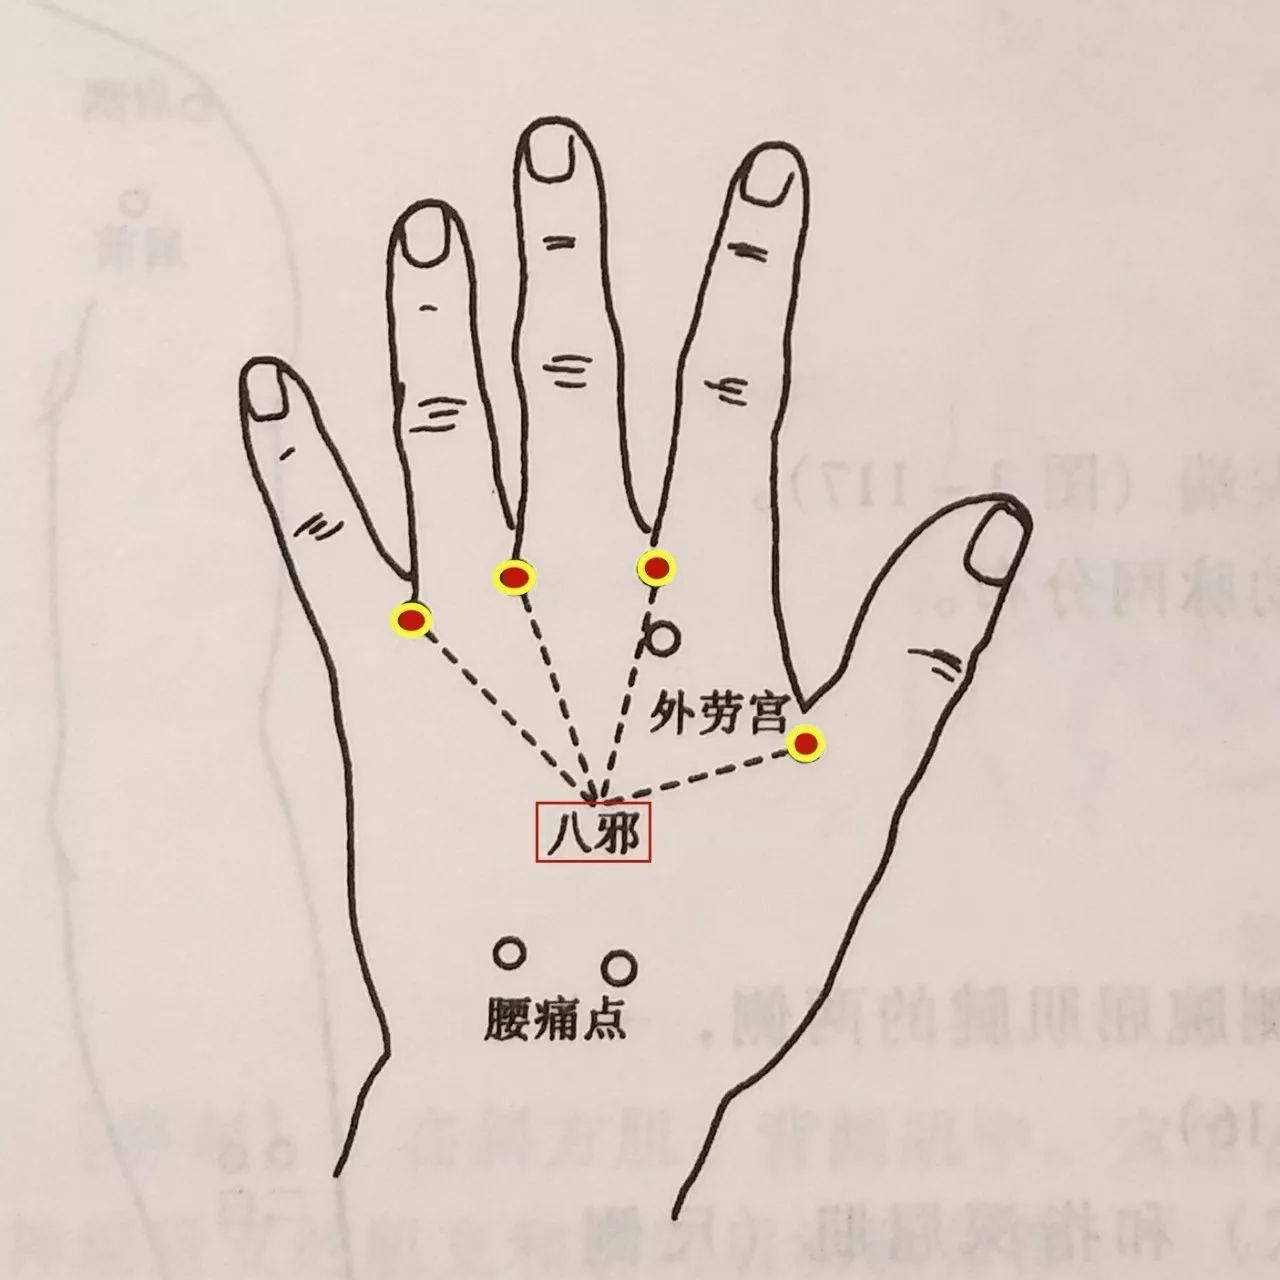 定 位 在手背侧,微握拳,第1至第5指间,指蹼缘后方赤白肉际处,左右共8